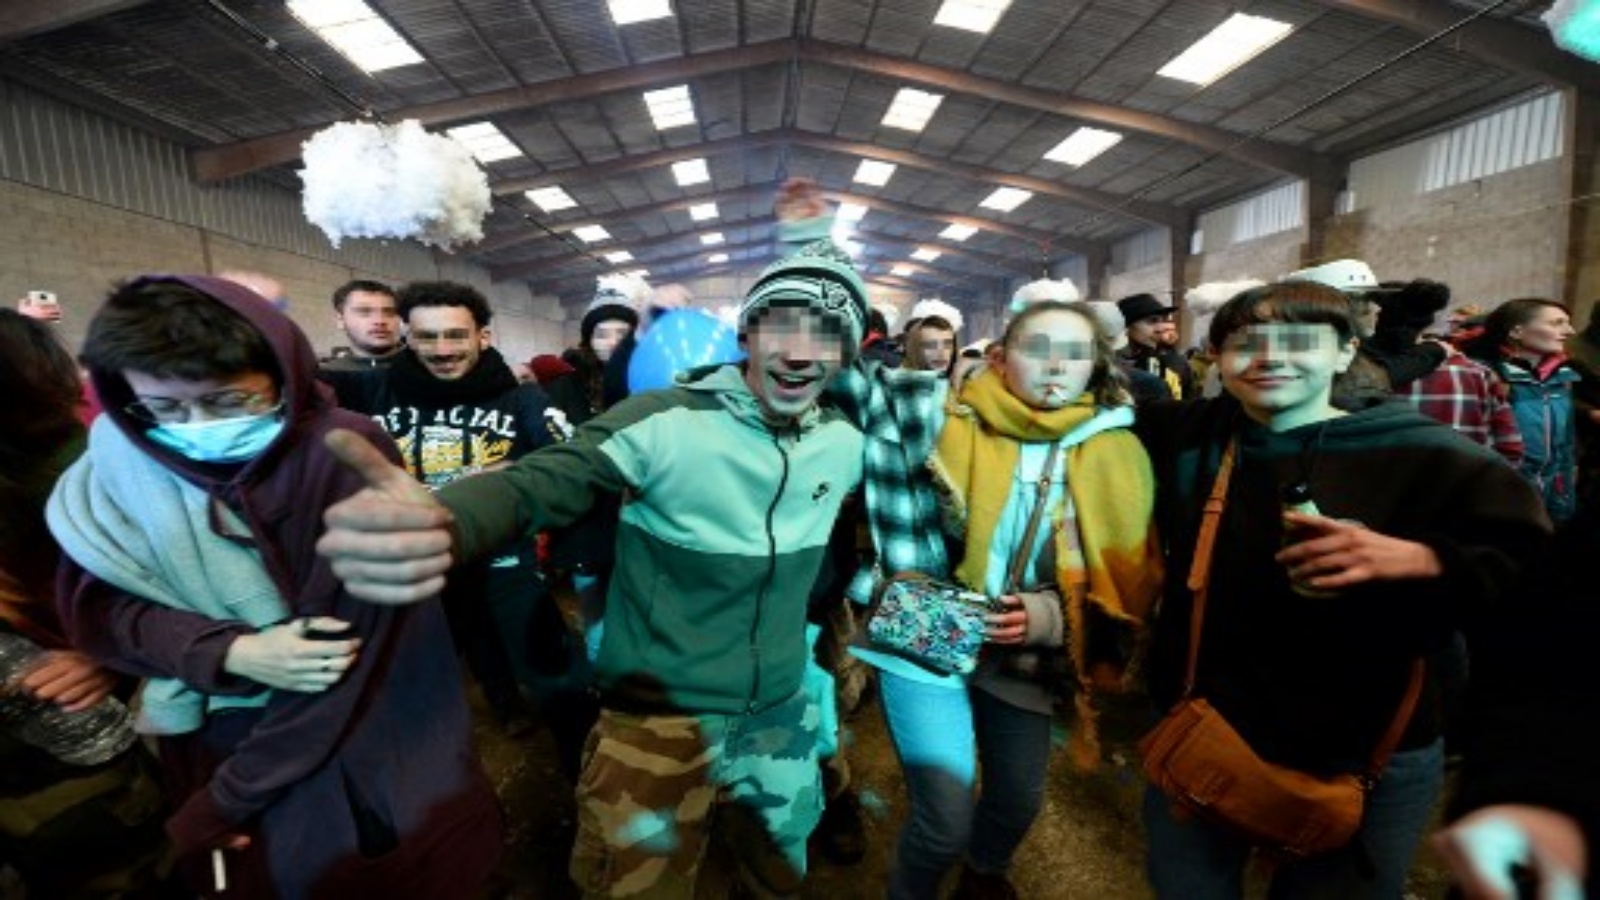 شباب يقفون أمام المصور أثناء حفلة في حظيرة مهجورة في ليورون على بعد حوالي 40 كيلومترًا (حوالي 24 ميلًا) جنوب رين ، في 1 يناير 2021